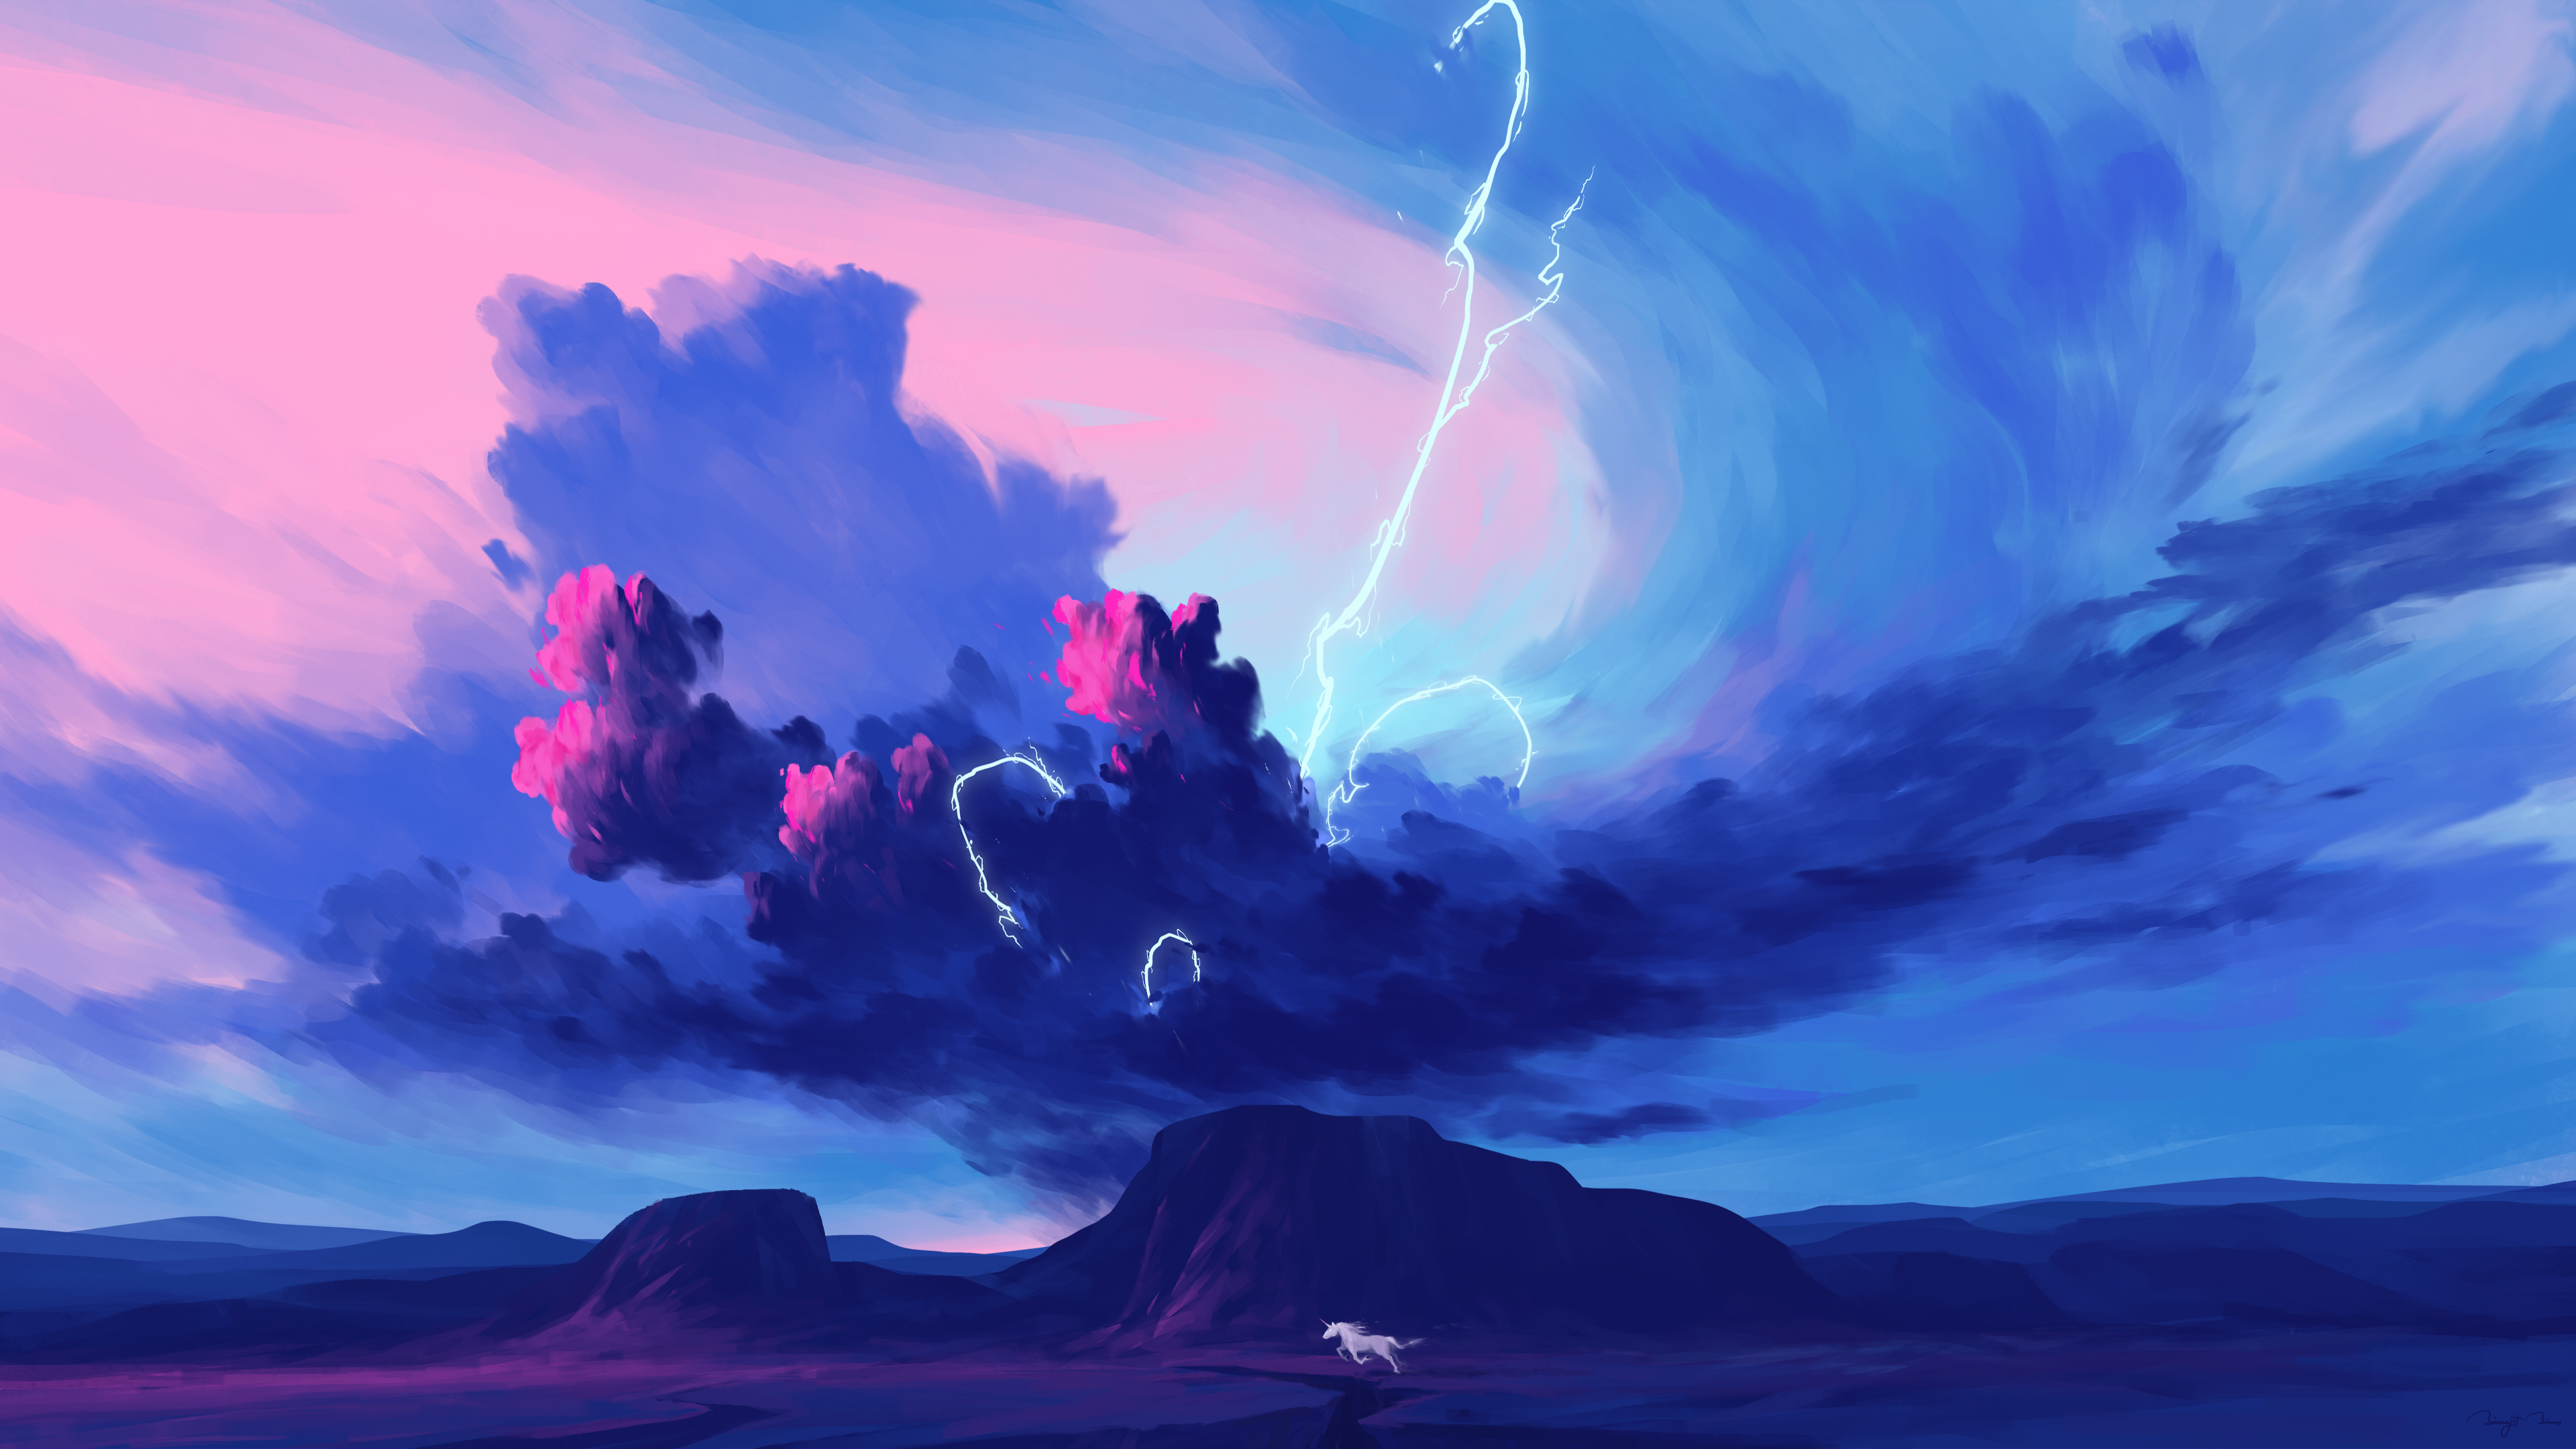 BisBiswas Digital Art Artwork Illustration Landscape Nature Sky Clouds Storm Lightning Horse Animals 3840x2160